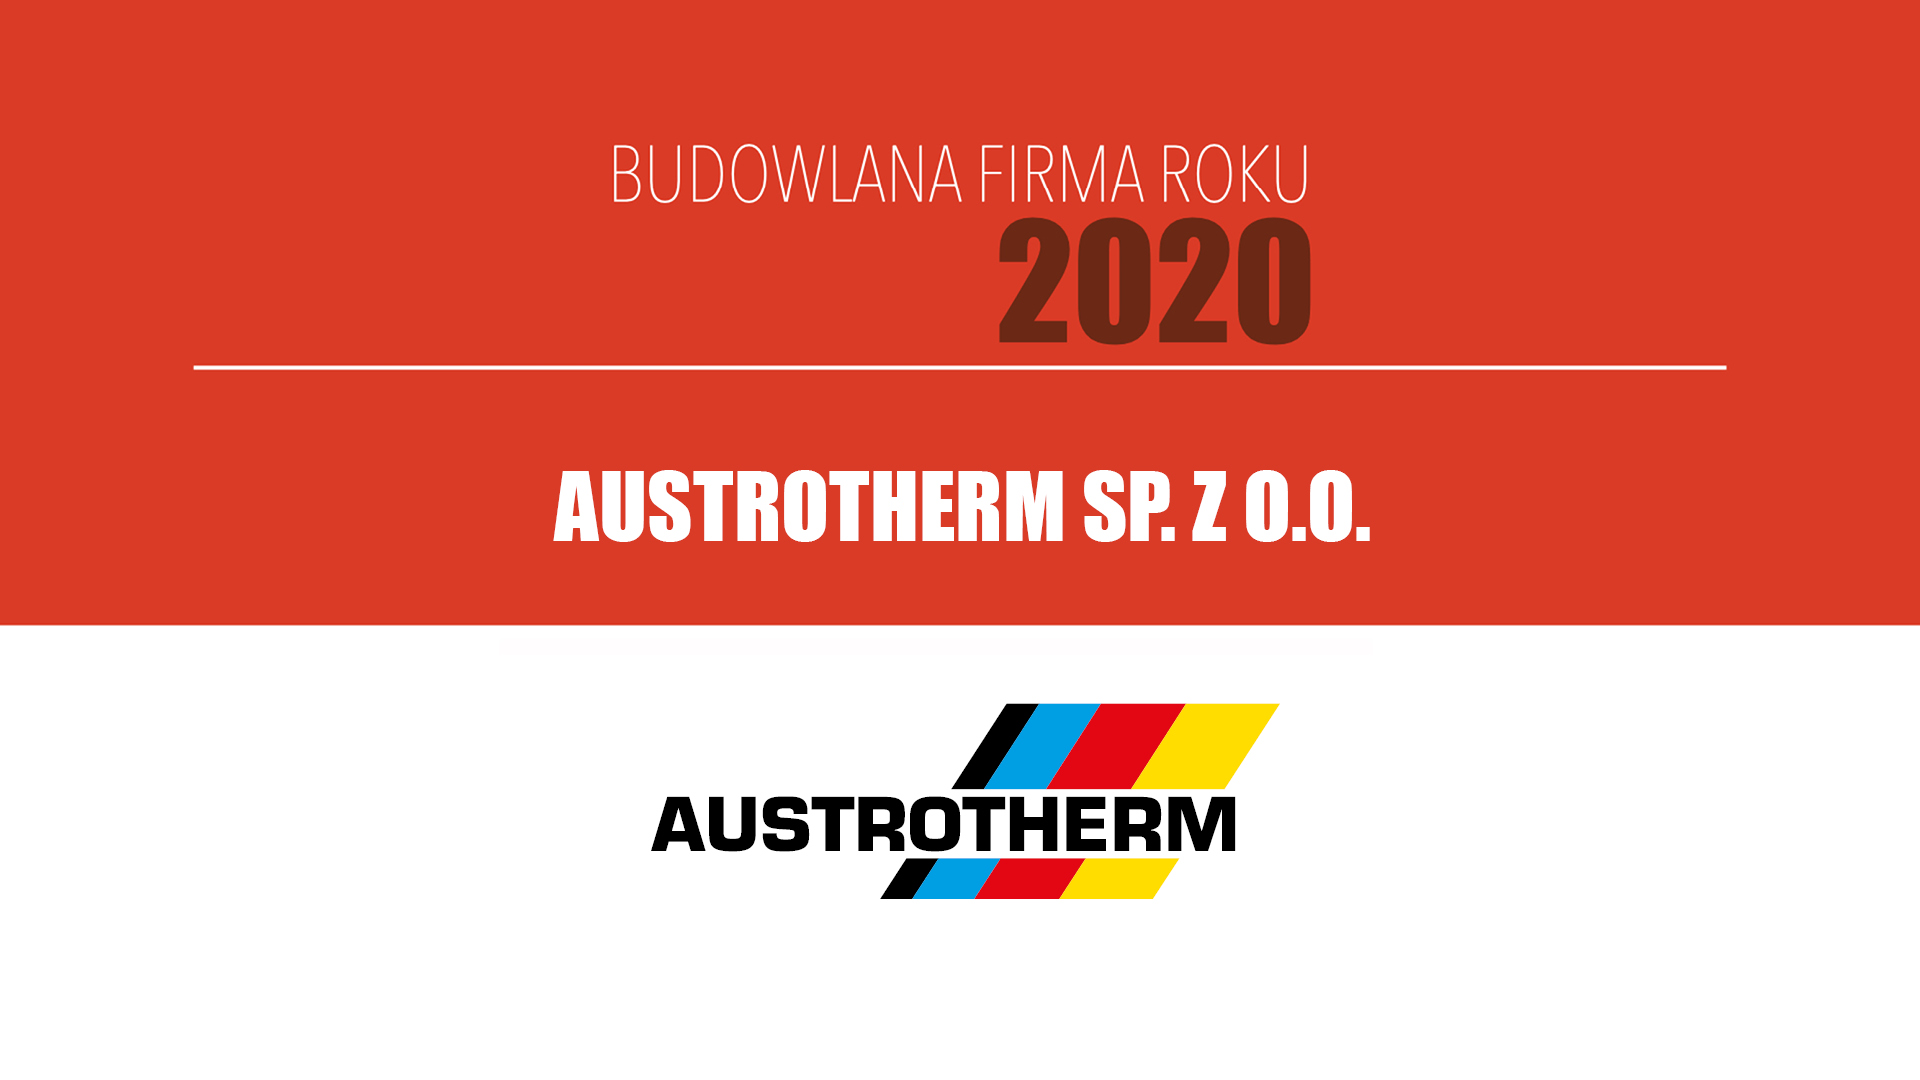 AUSTROTHERM SP. Z O.O. – Budowlana Firma Roku 2020